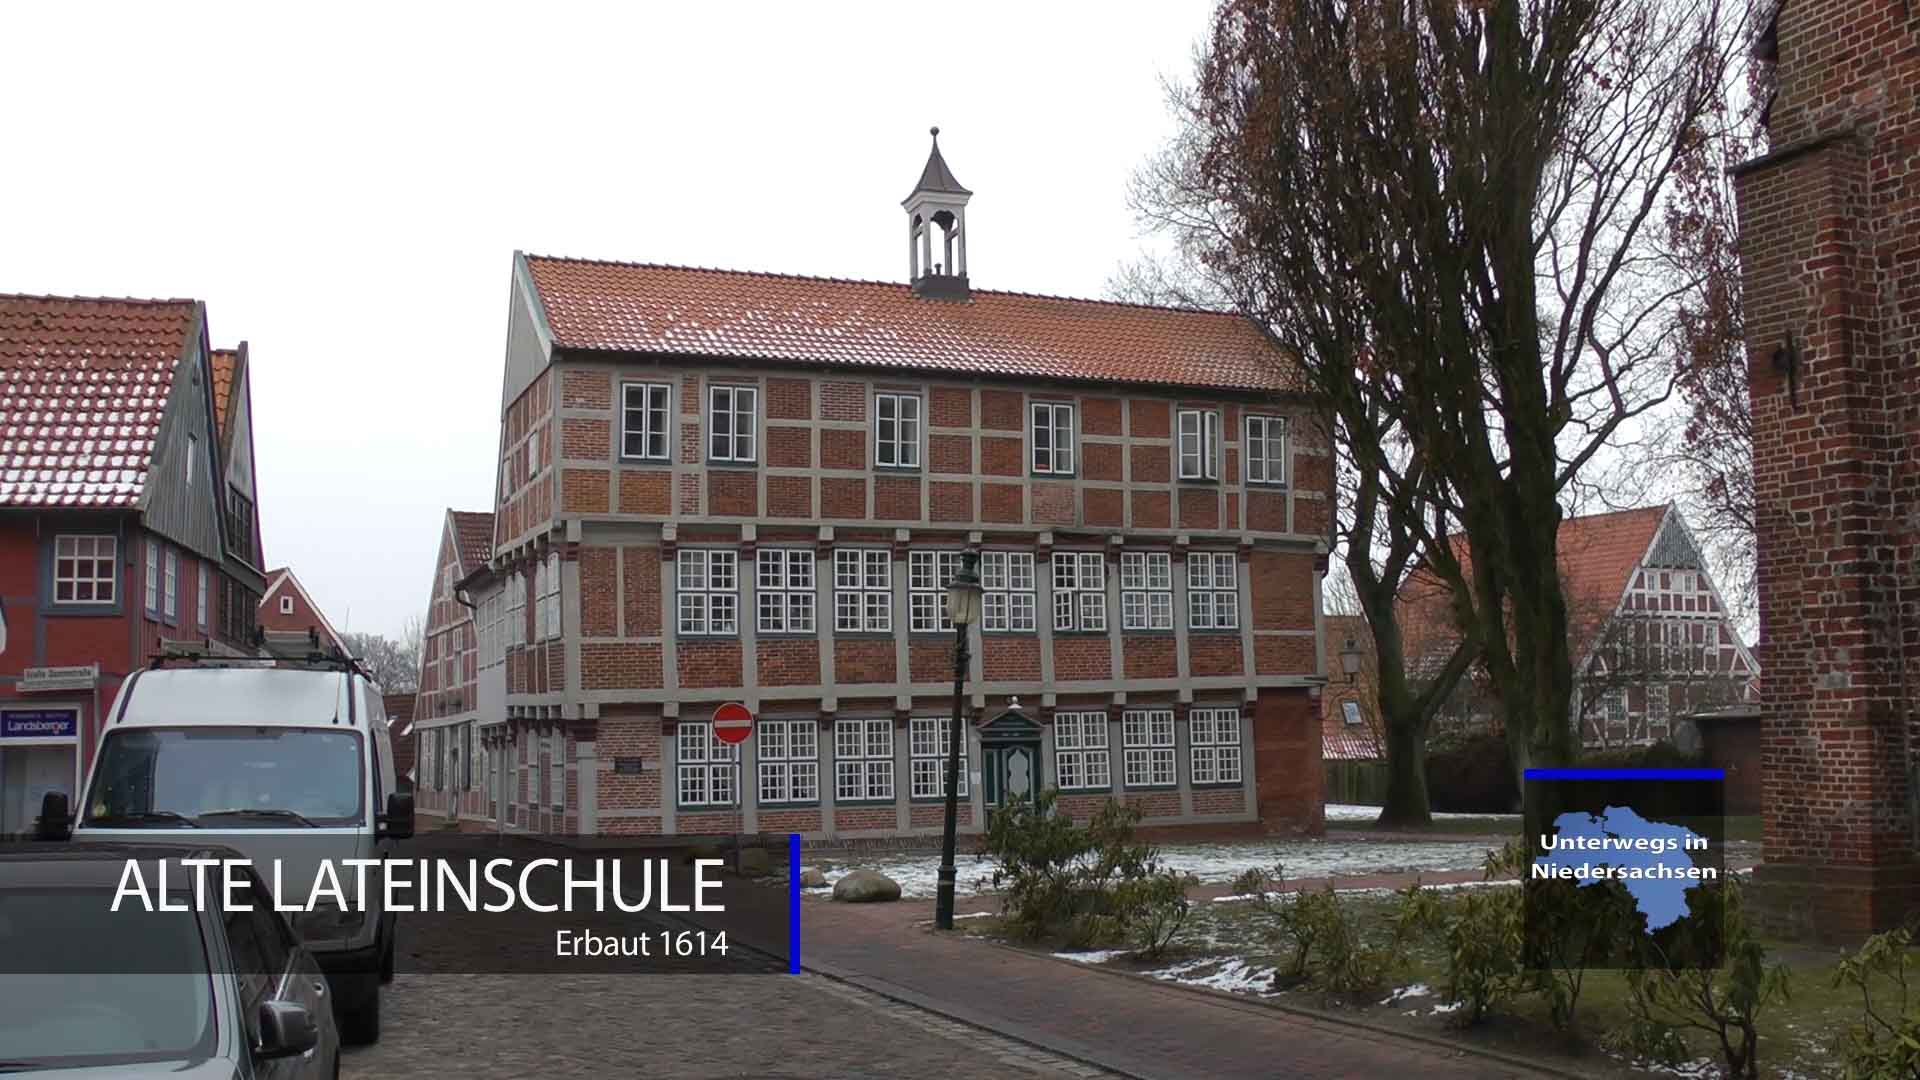 Alte Lateinschule von 1614